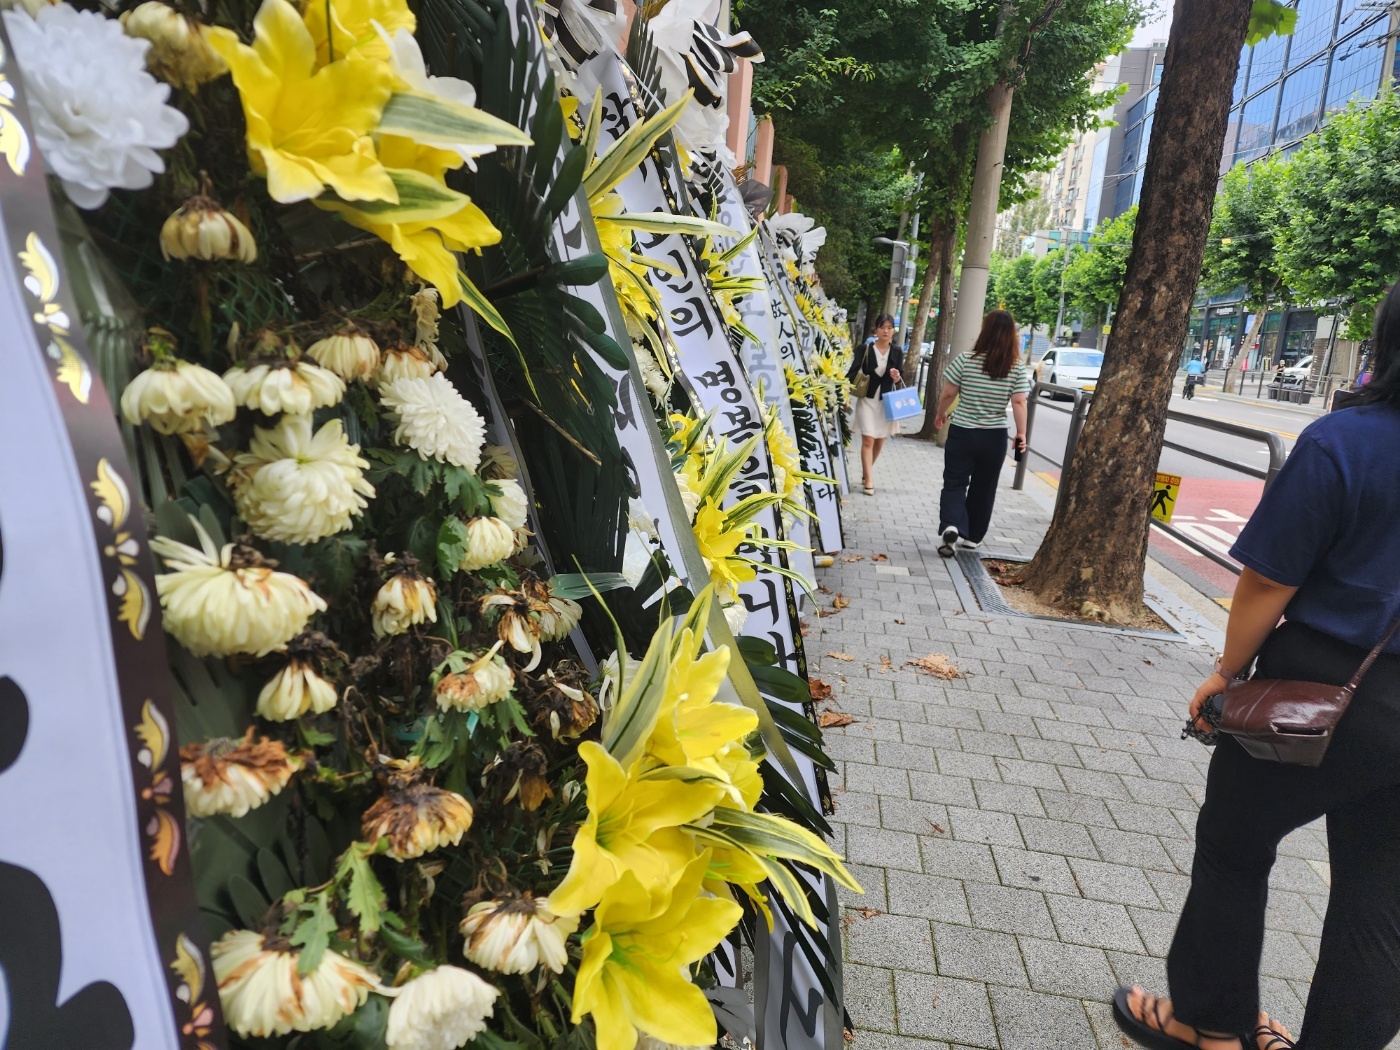 27일 서이초 앞 거리에 놓인 근조화환이 시들고 있는 모습. 김중래 기자